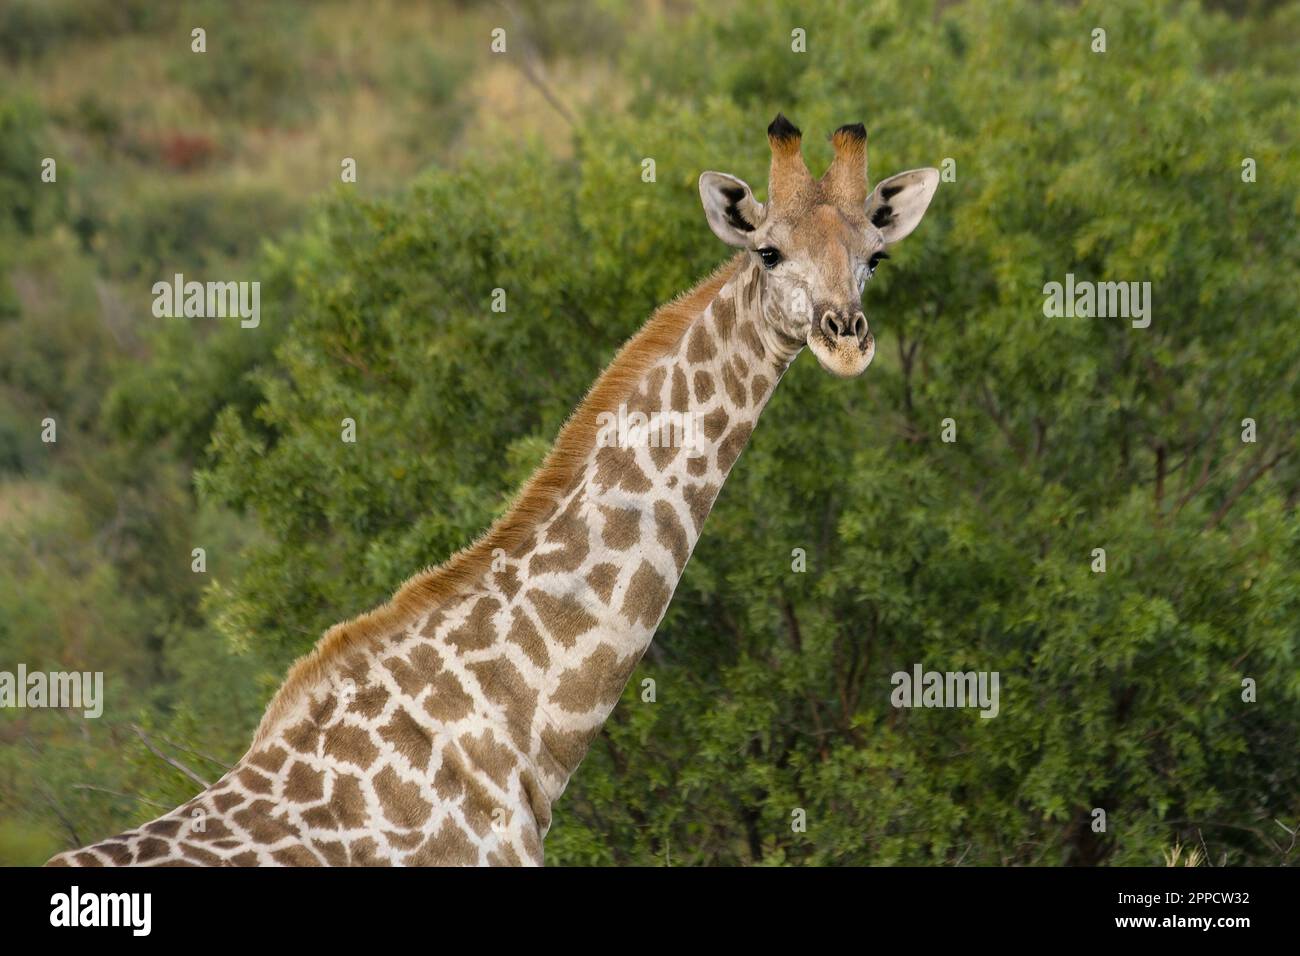 La girafe est le plus grand mammifère de ruminants et le plus grand de toutes les espèces éteintes Banque D'Images